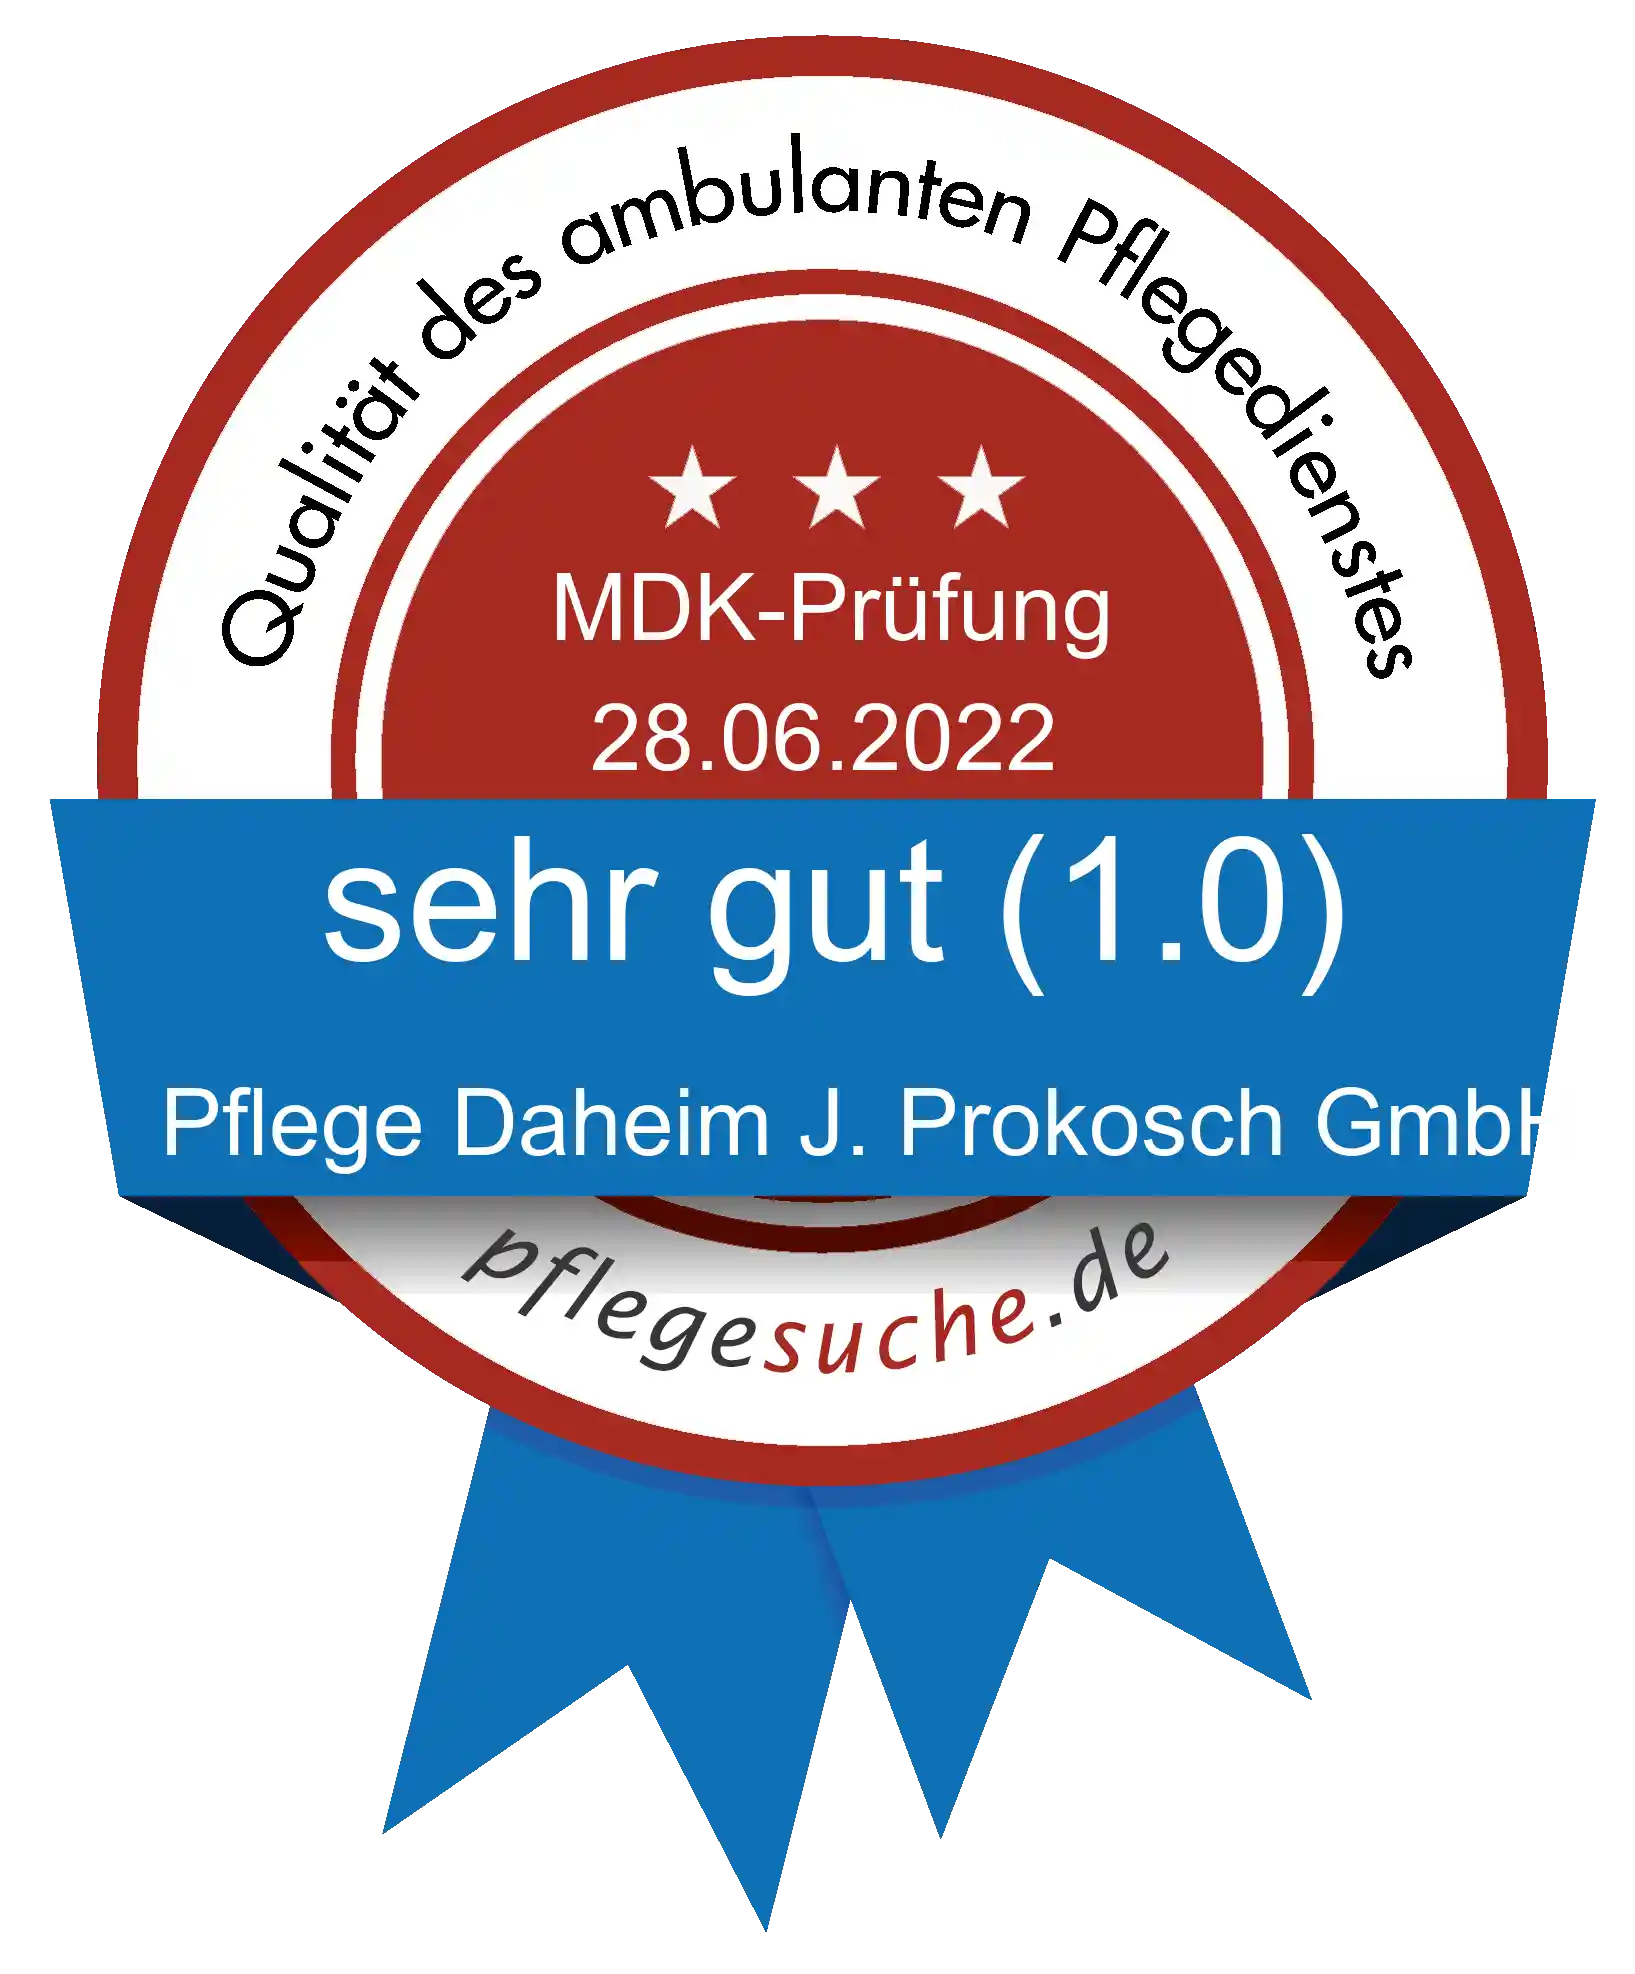 Siegel Benotung: Pflege Daheim J. Prokosch GmbH